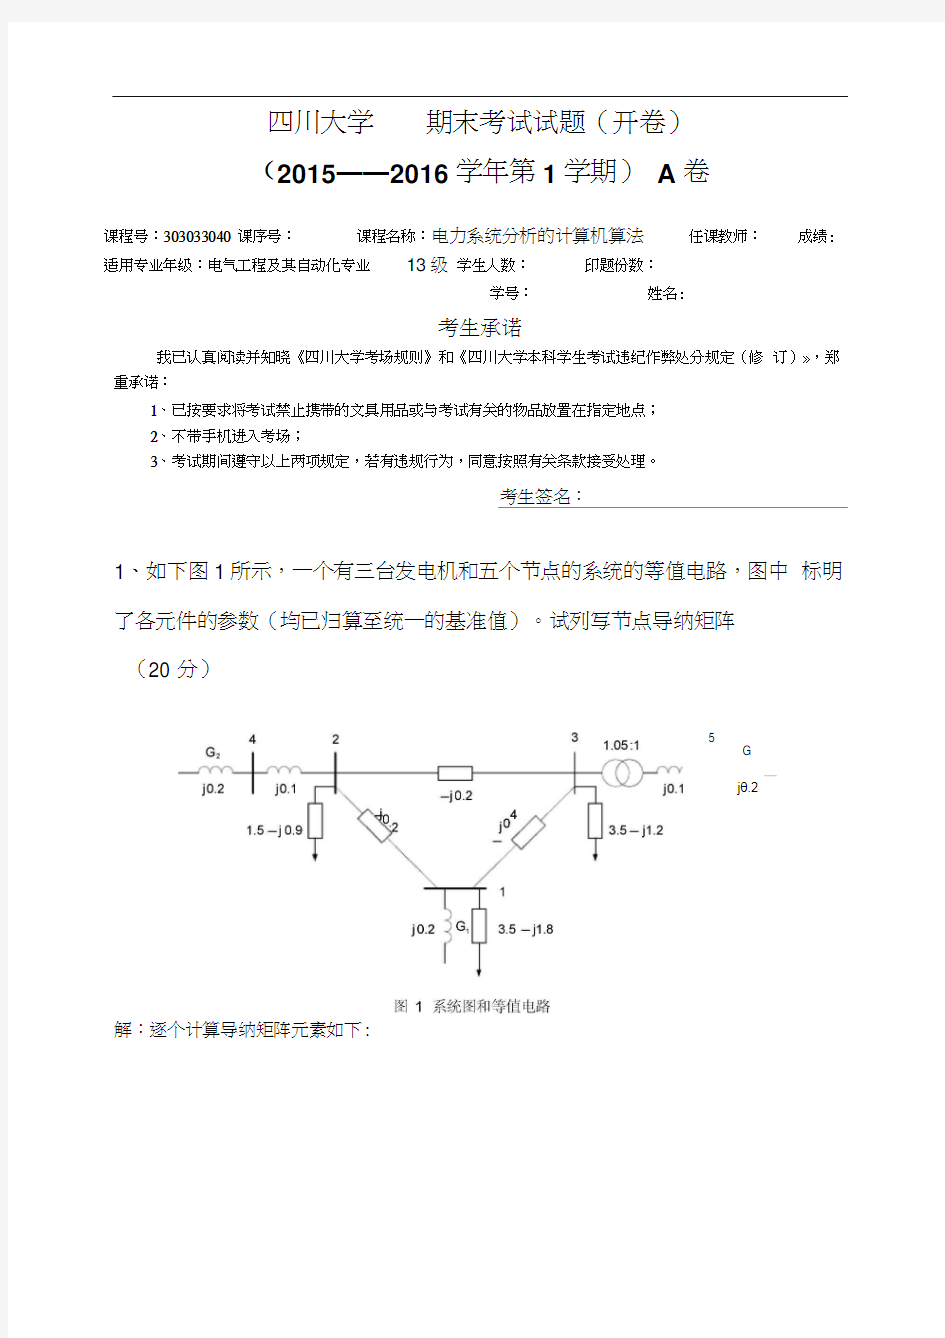 四川大学电力系统计辅期末考试13